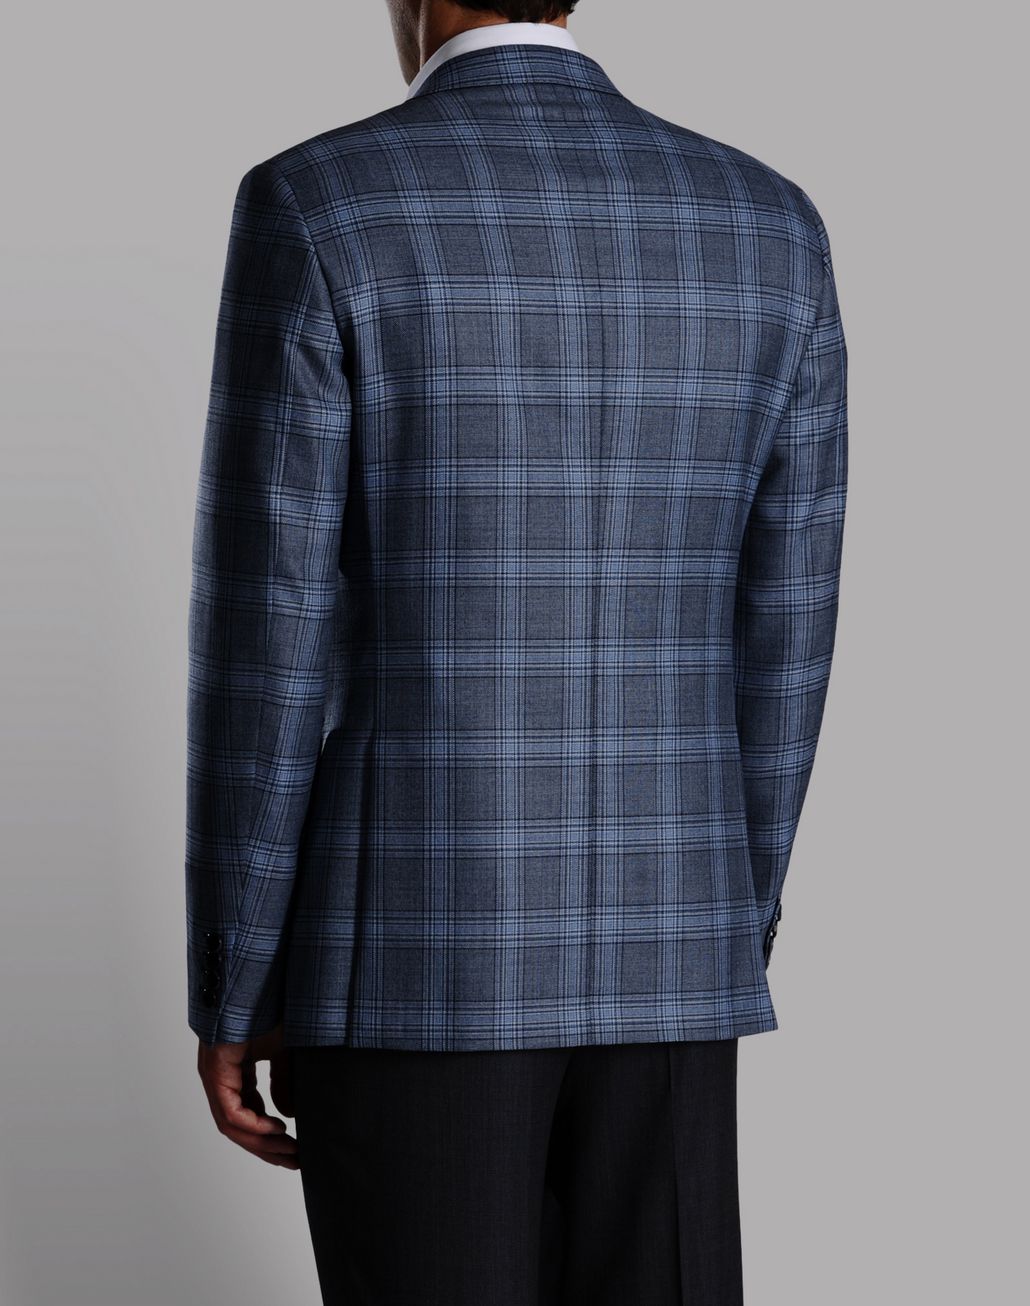 Brioni ‎Men‎'s ‎Suits & Jackets‎ | Brioni Official Online Store